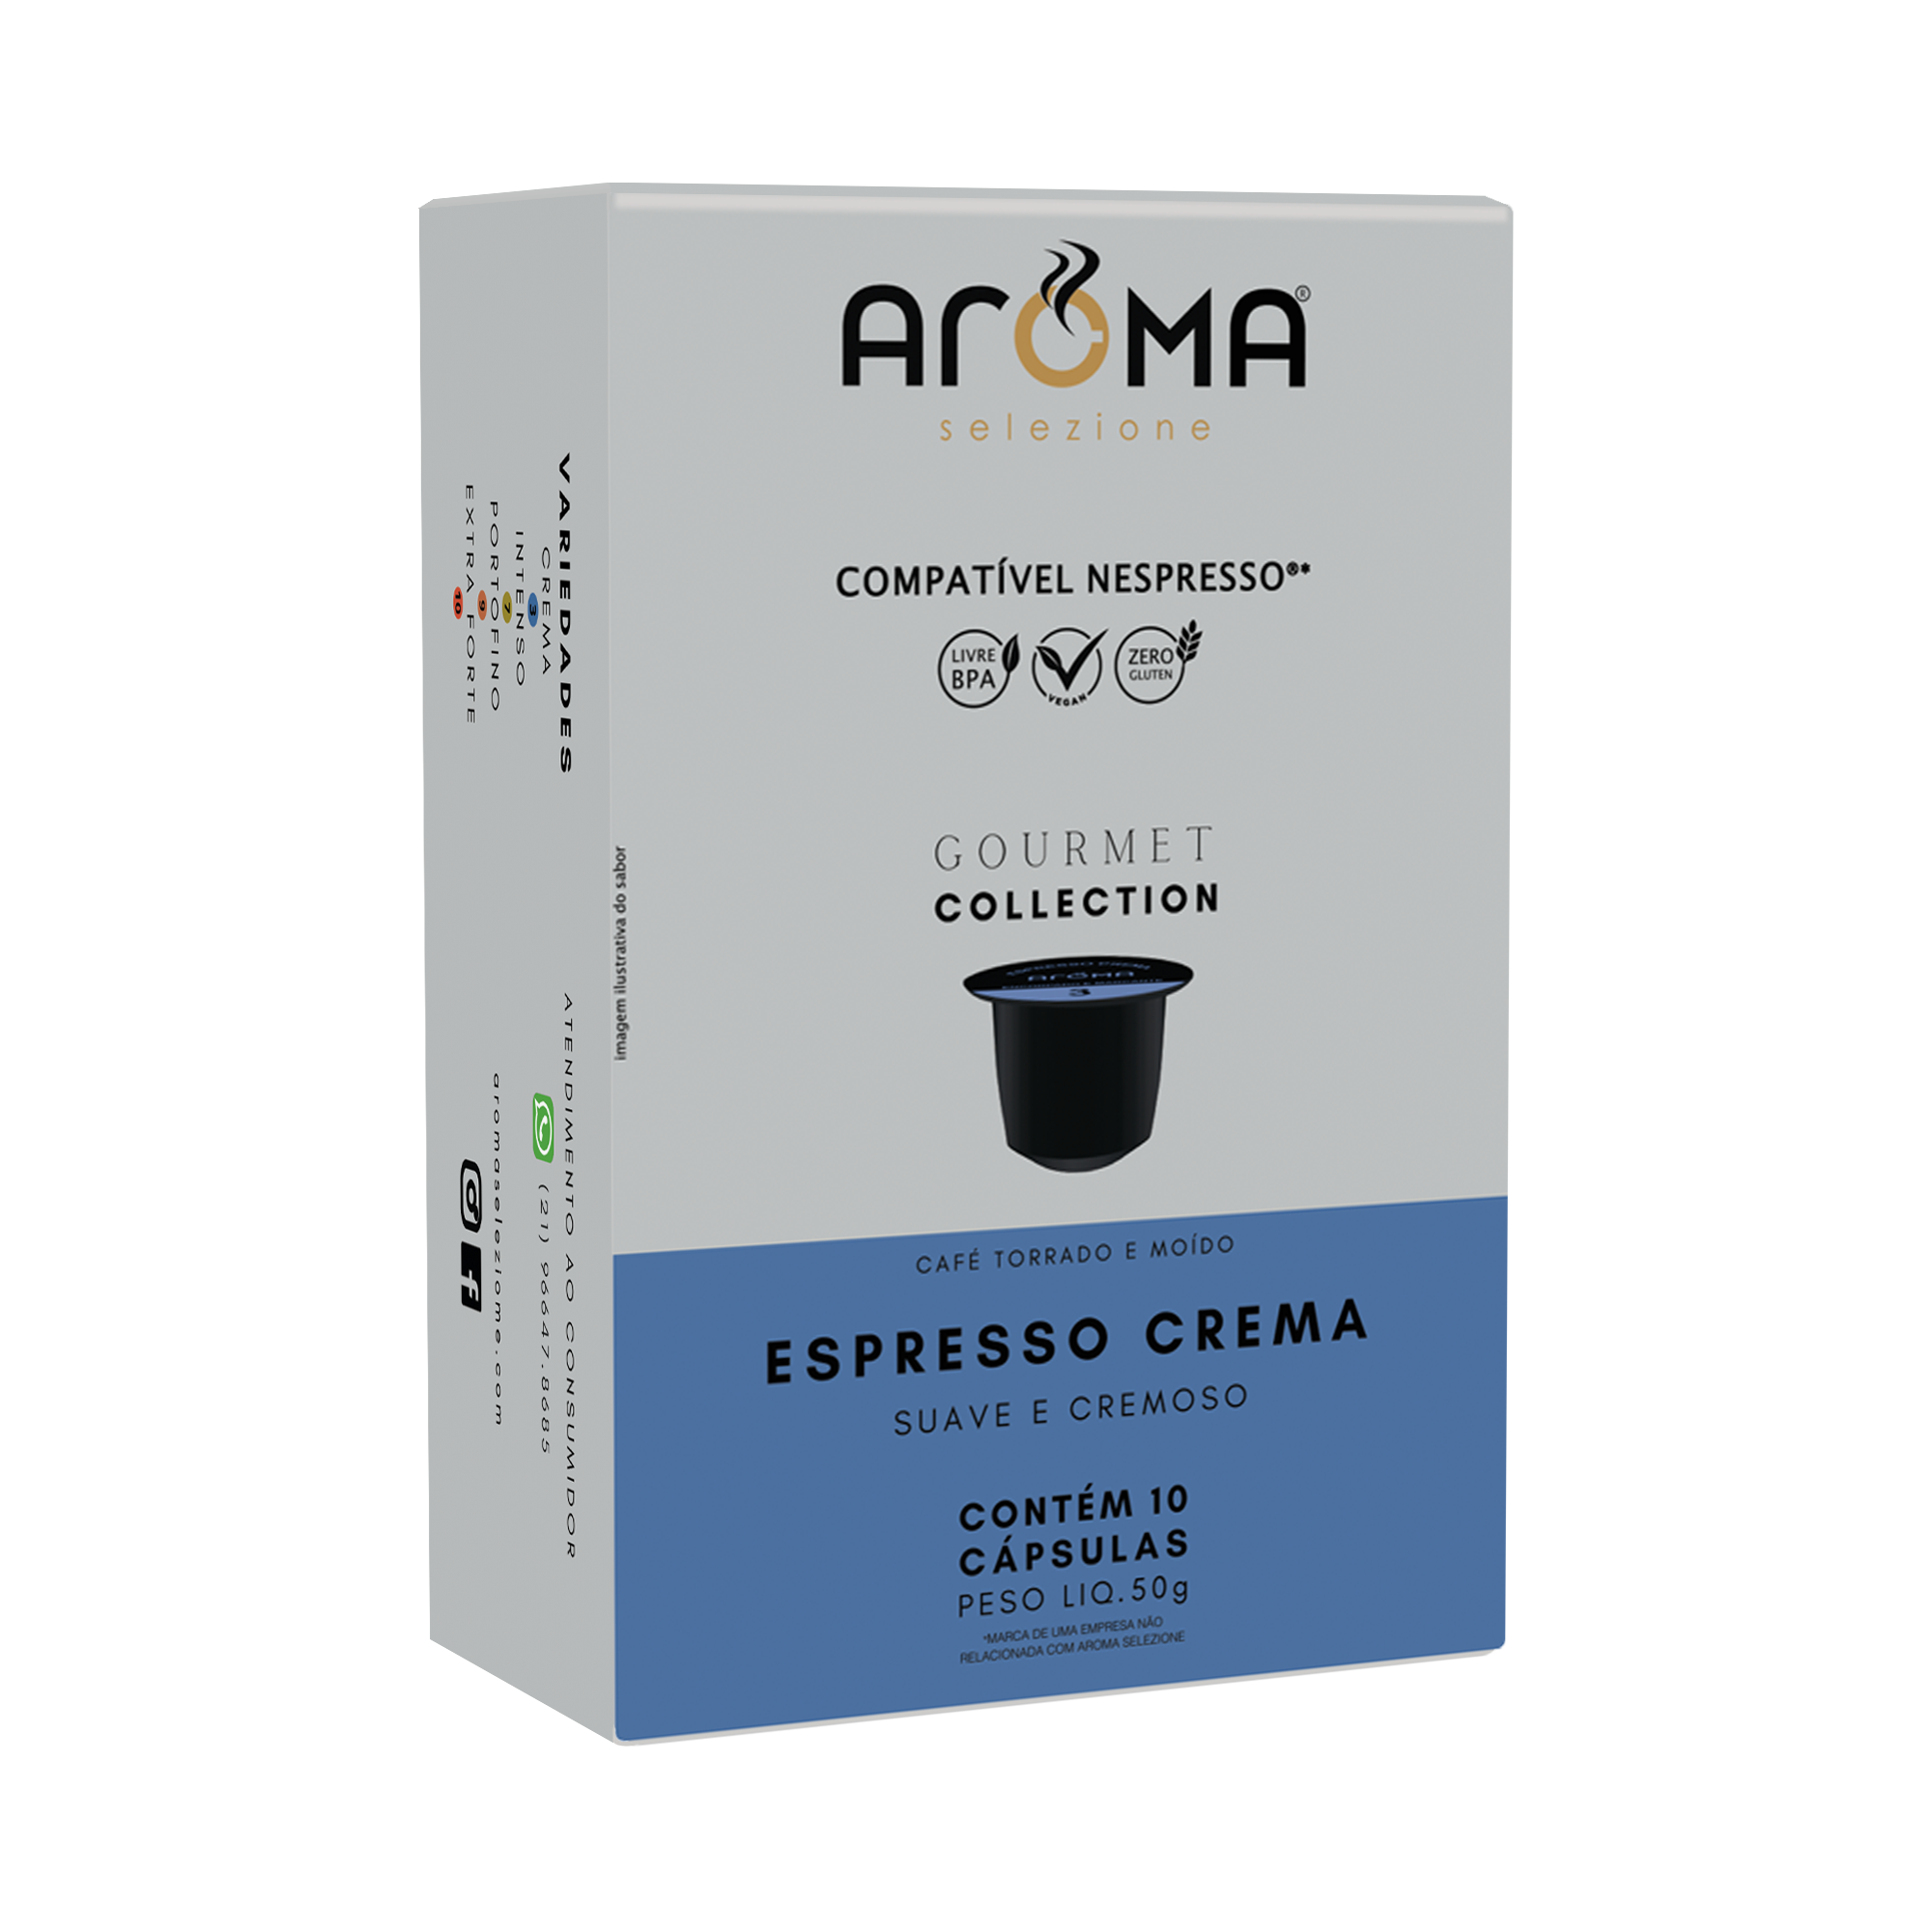 Caixa com 10 cápsulas para Nespresso ®* - Espresso crema